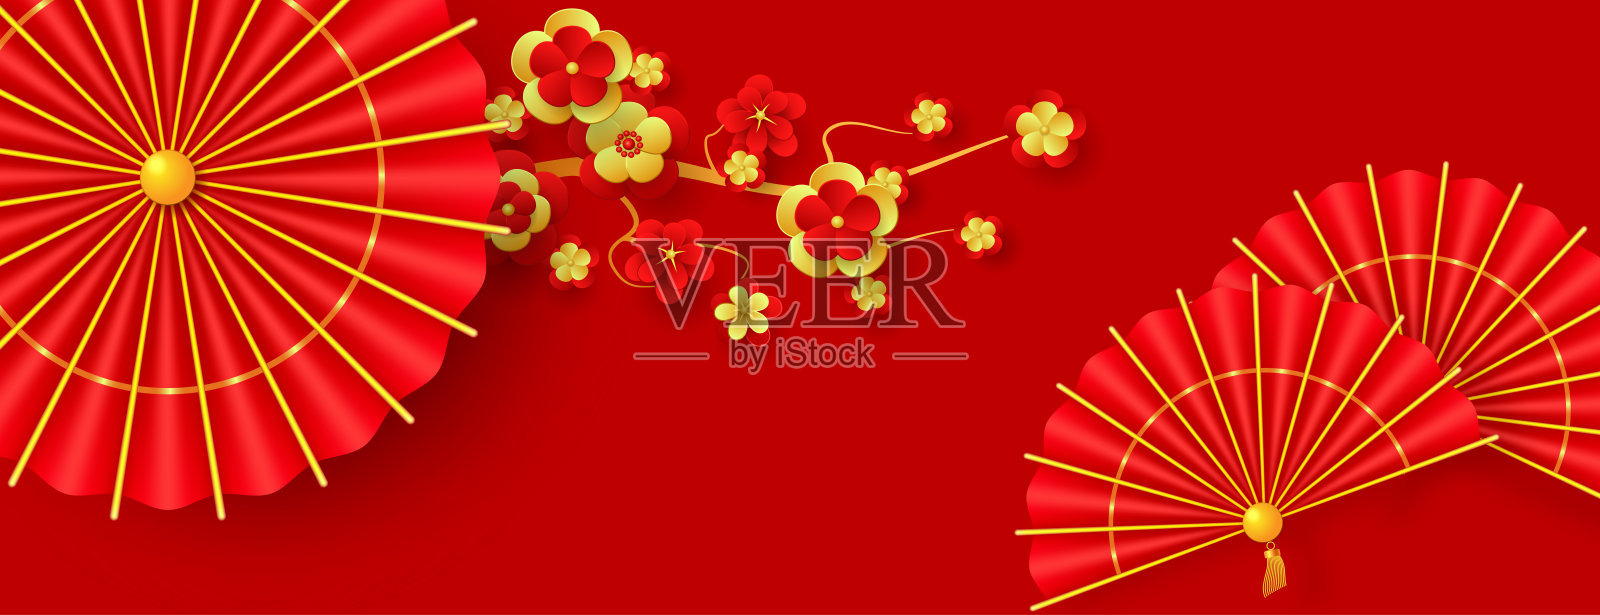 东方节日农历新年。红色和金色的纸扇和传统的红色雨伞。东方节日农历新年的装饰。插画图片素材